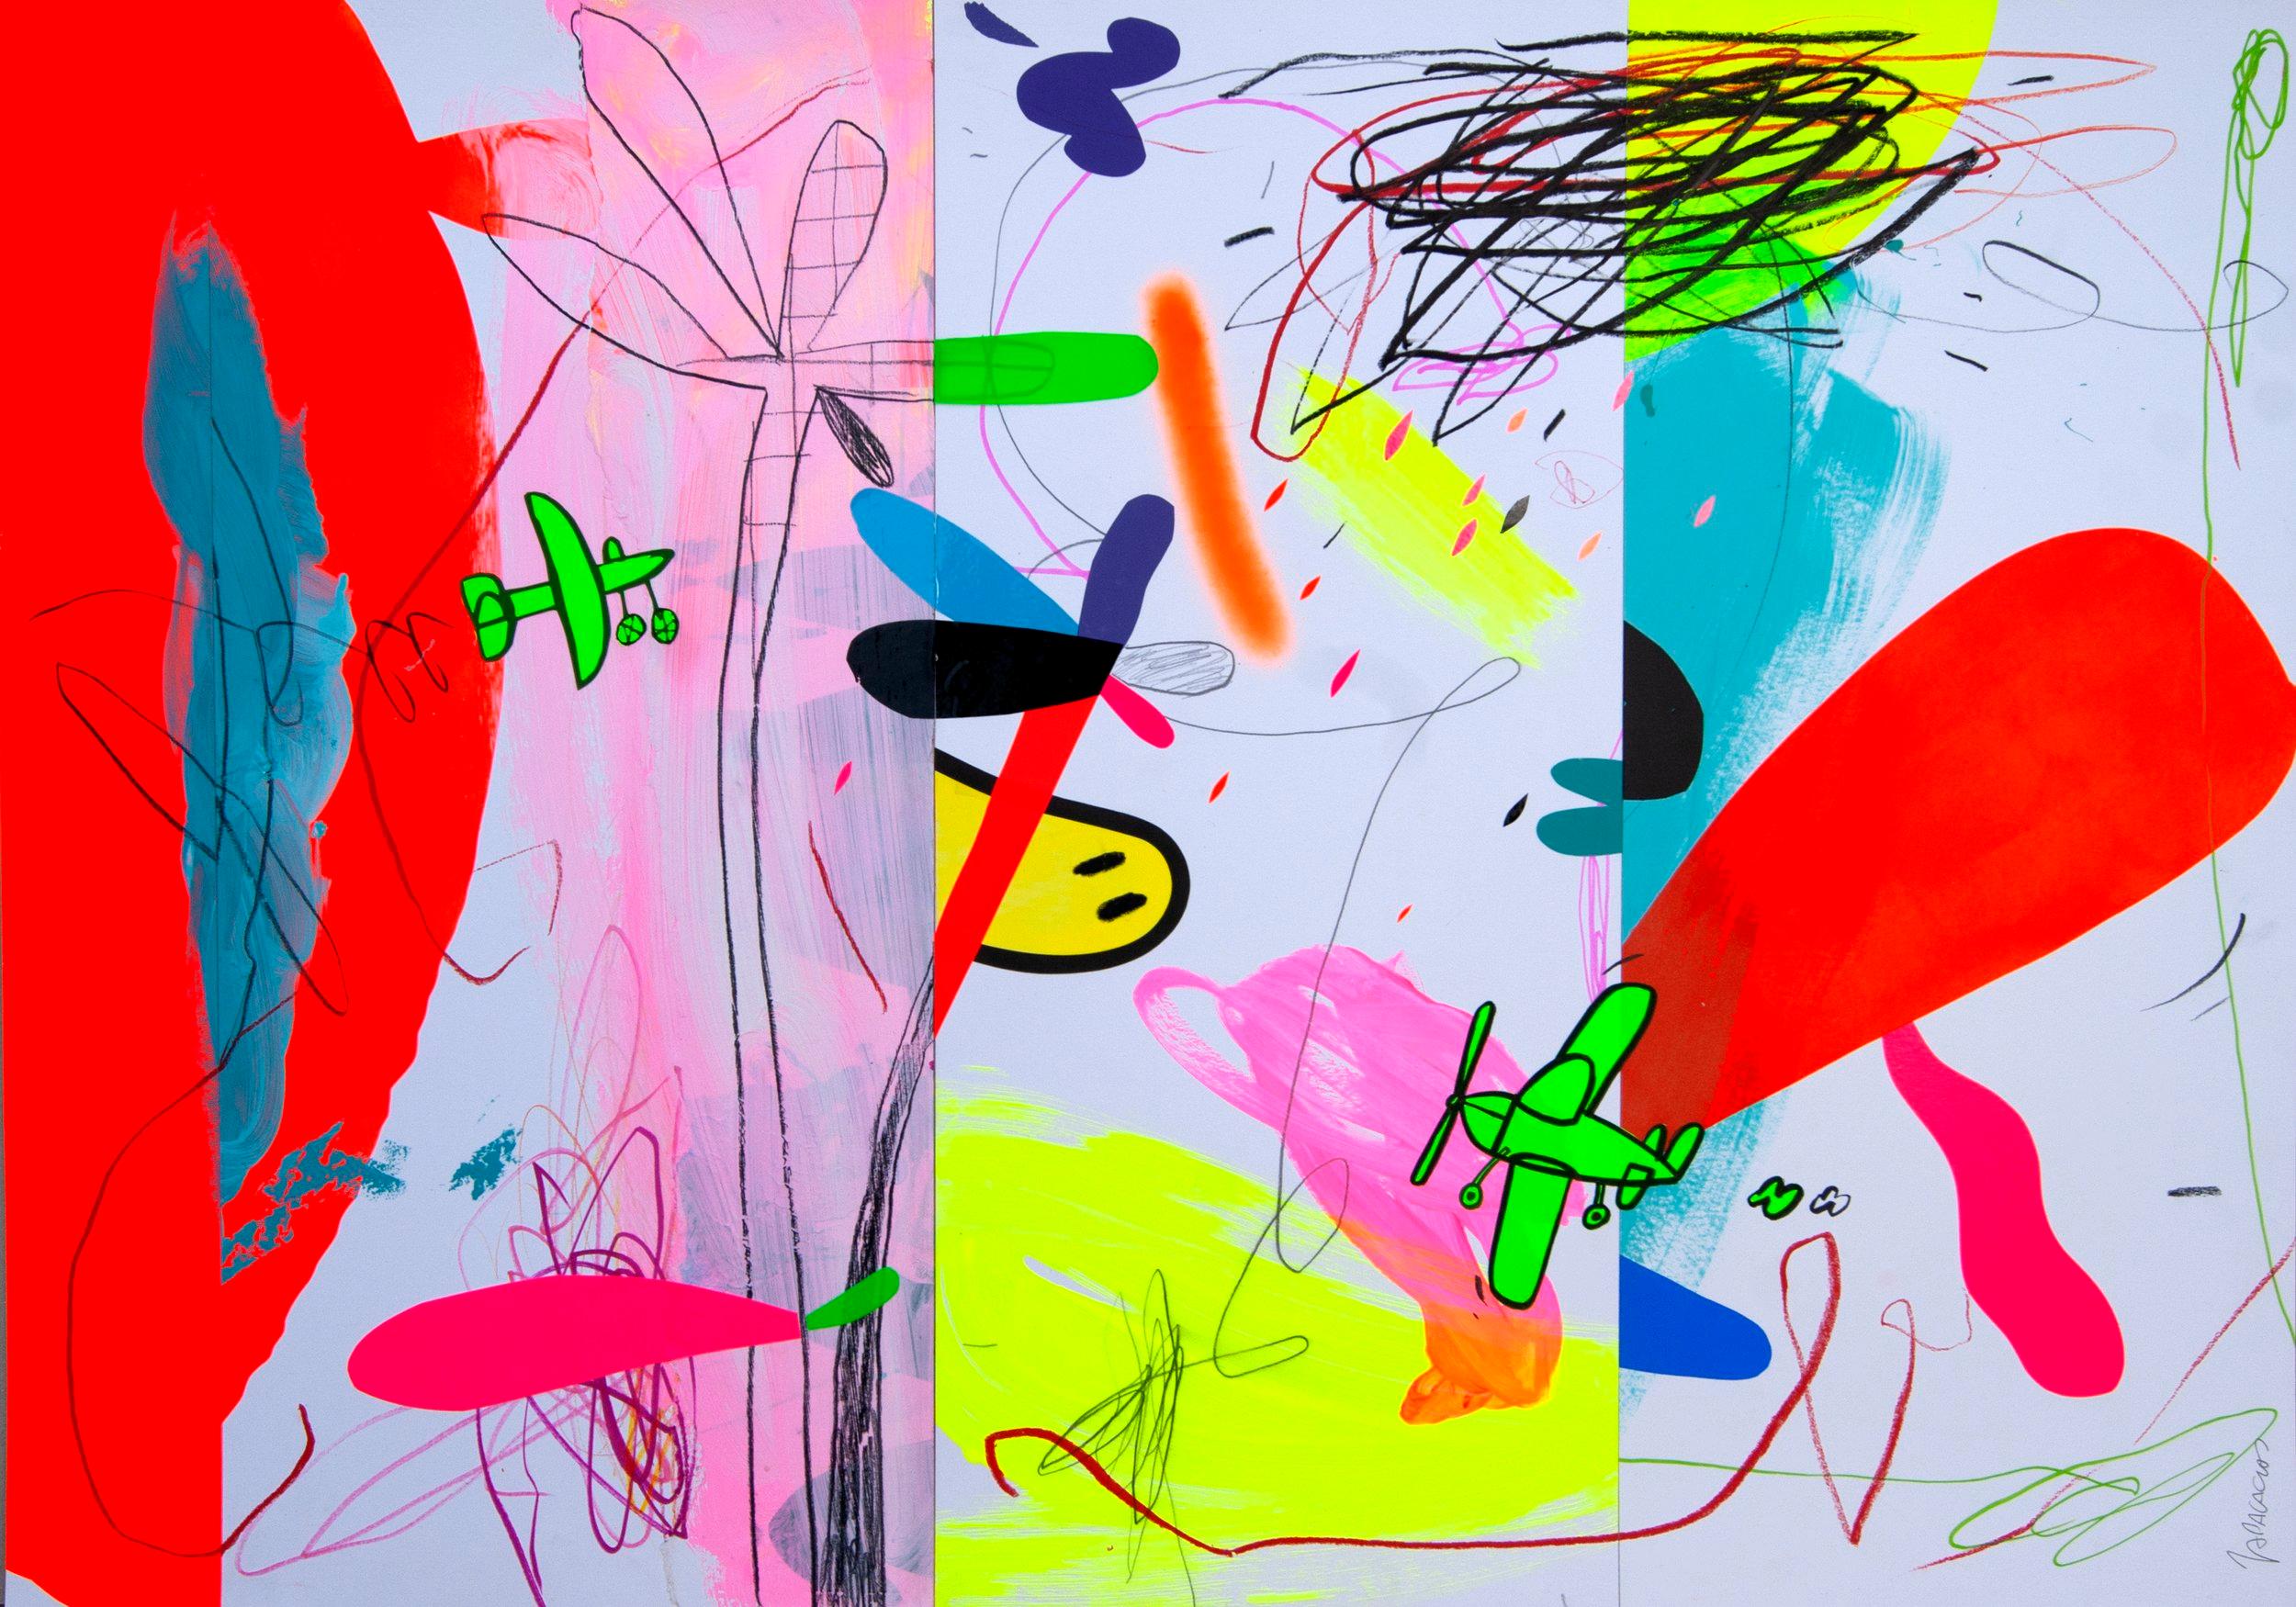 In diesem Original mit Acrylfarbe und Vinyl auf Papier der Art Angler Gallery stellt Jose Palacios einen abstrakten Pop-Art-Stil dar. Er verwendet leuchtend rosa, weiße, grüne, blaue, schwarze und rote Formen, um seine Komposition aus "tropischen